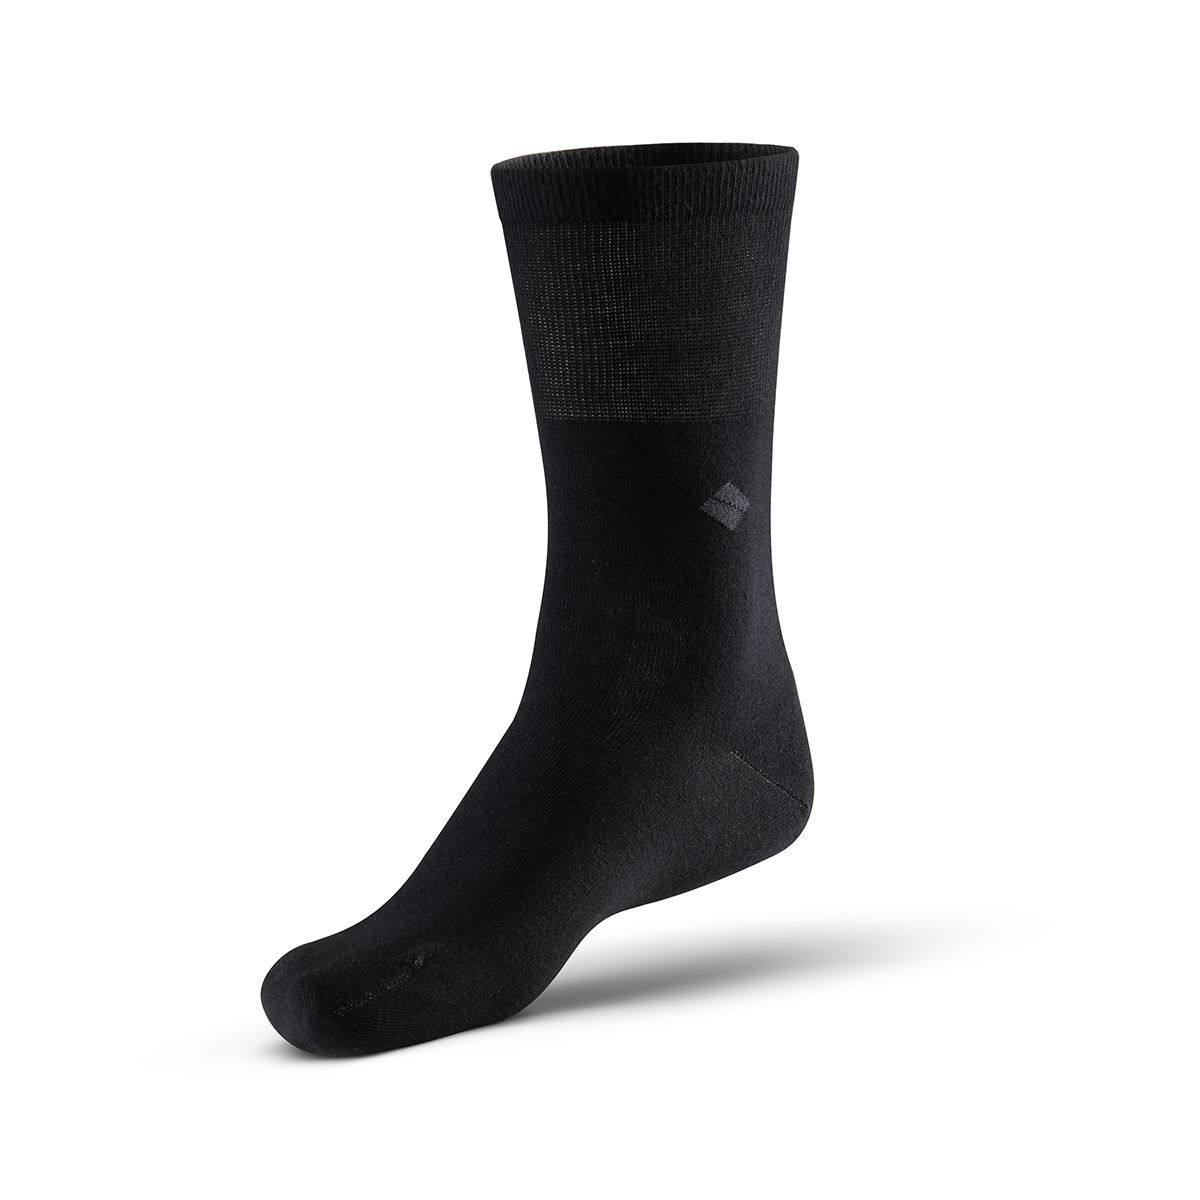 bonnysilver diabetic silver socks in black single sock